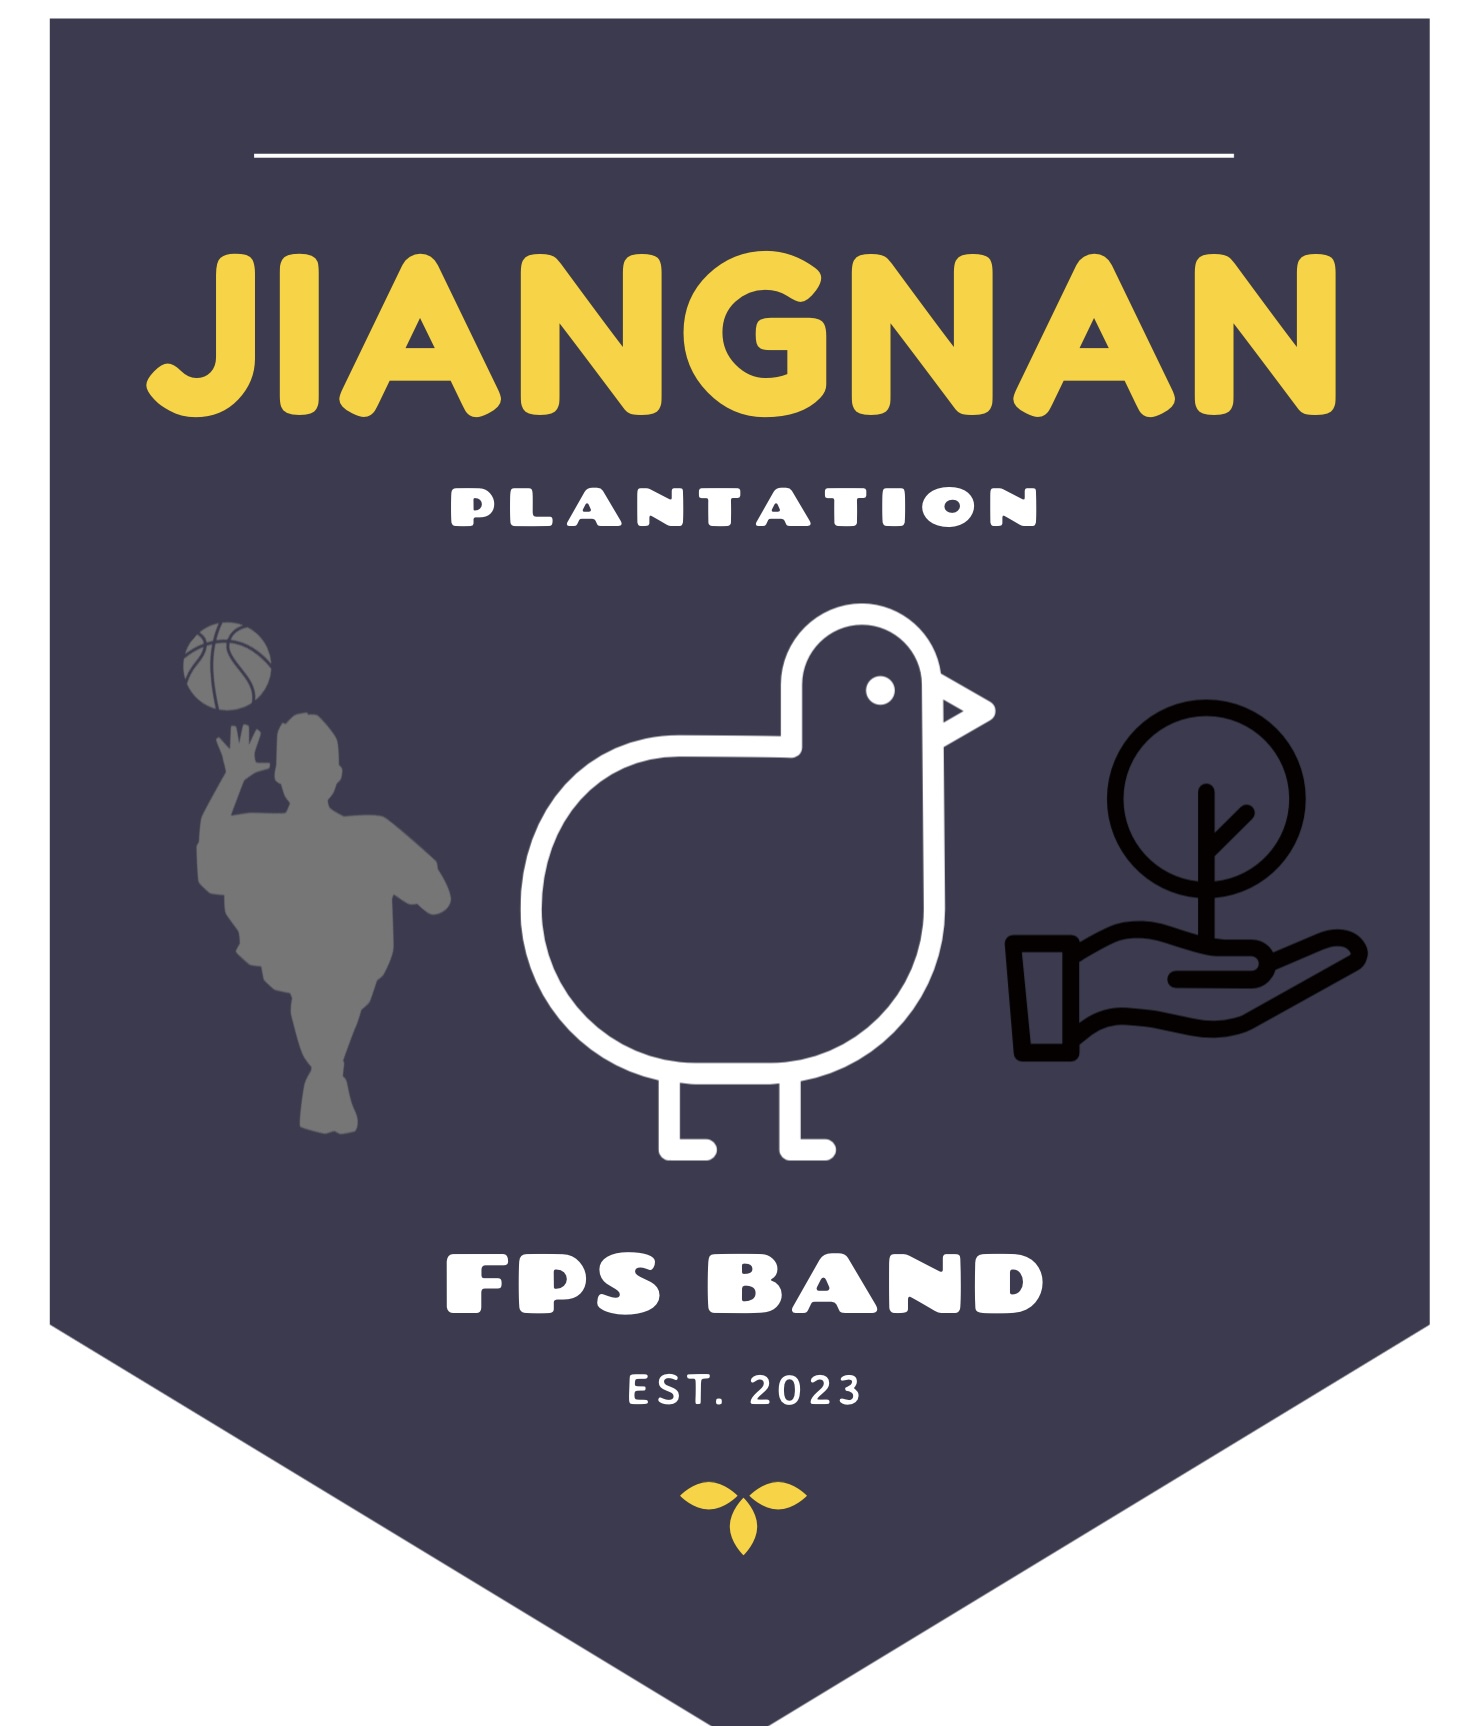 Jiangnan Plantation